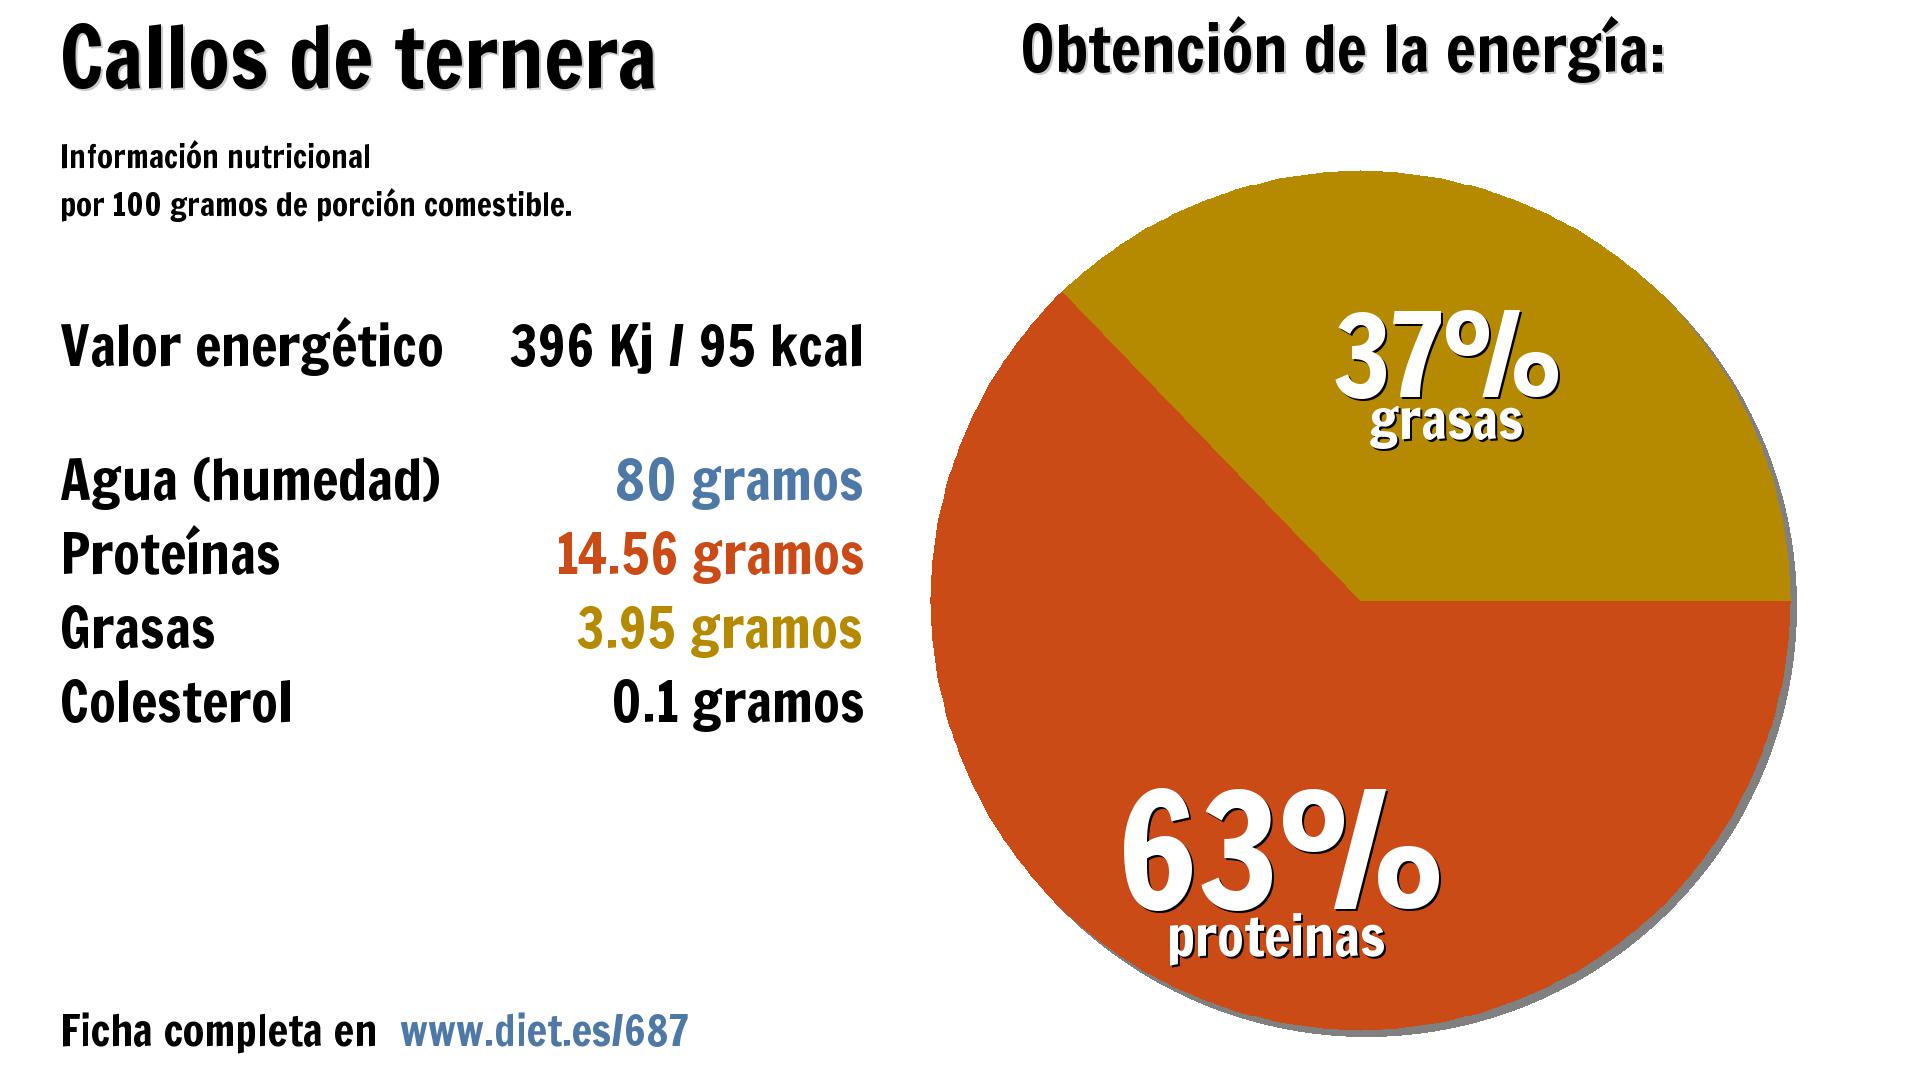 Callos de ternera: energía 396 Kj, agua 80 g., proteínas 15 g. y grasas 4 g.